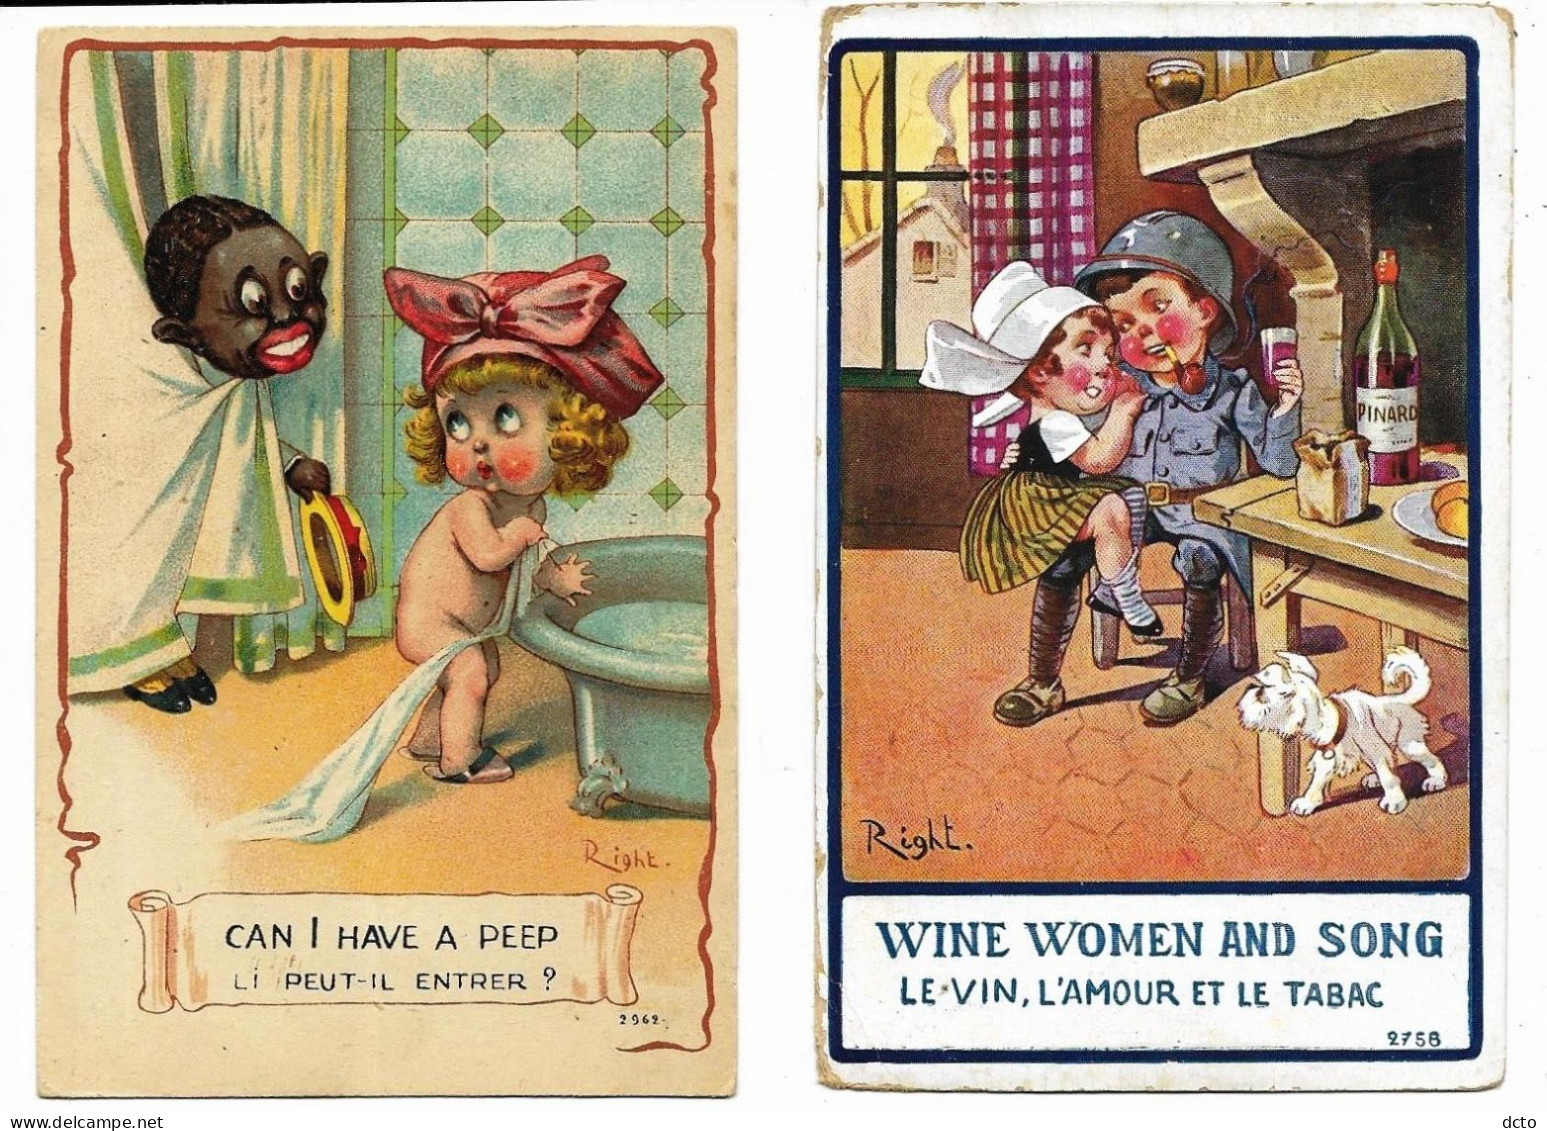 2 Cpa RIGHT Le Vin, L'amour Et Le Tabac 2758 (1 Angle Mou, Envoi 1918) & Li Peut-il Entrer  2962 Lapina - Right